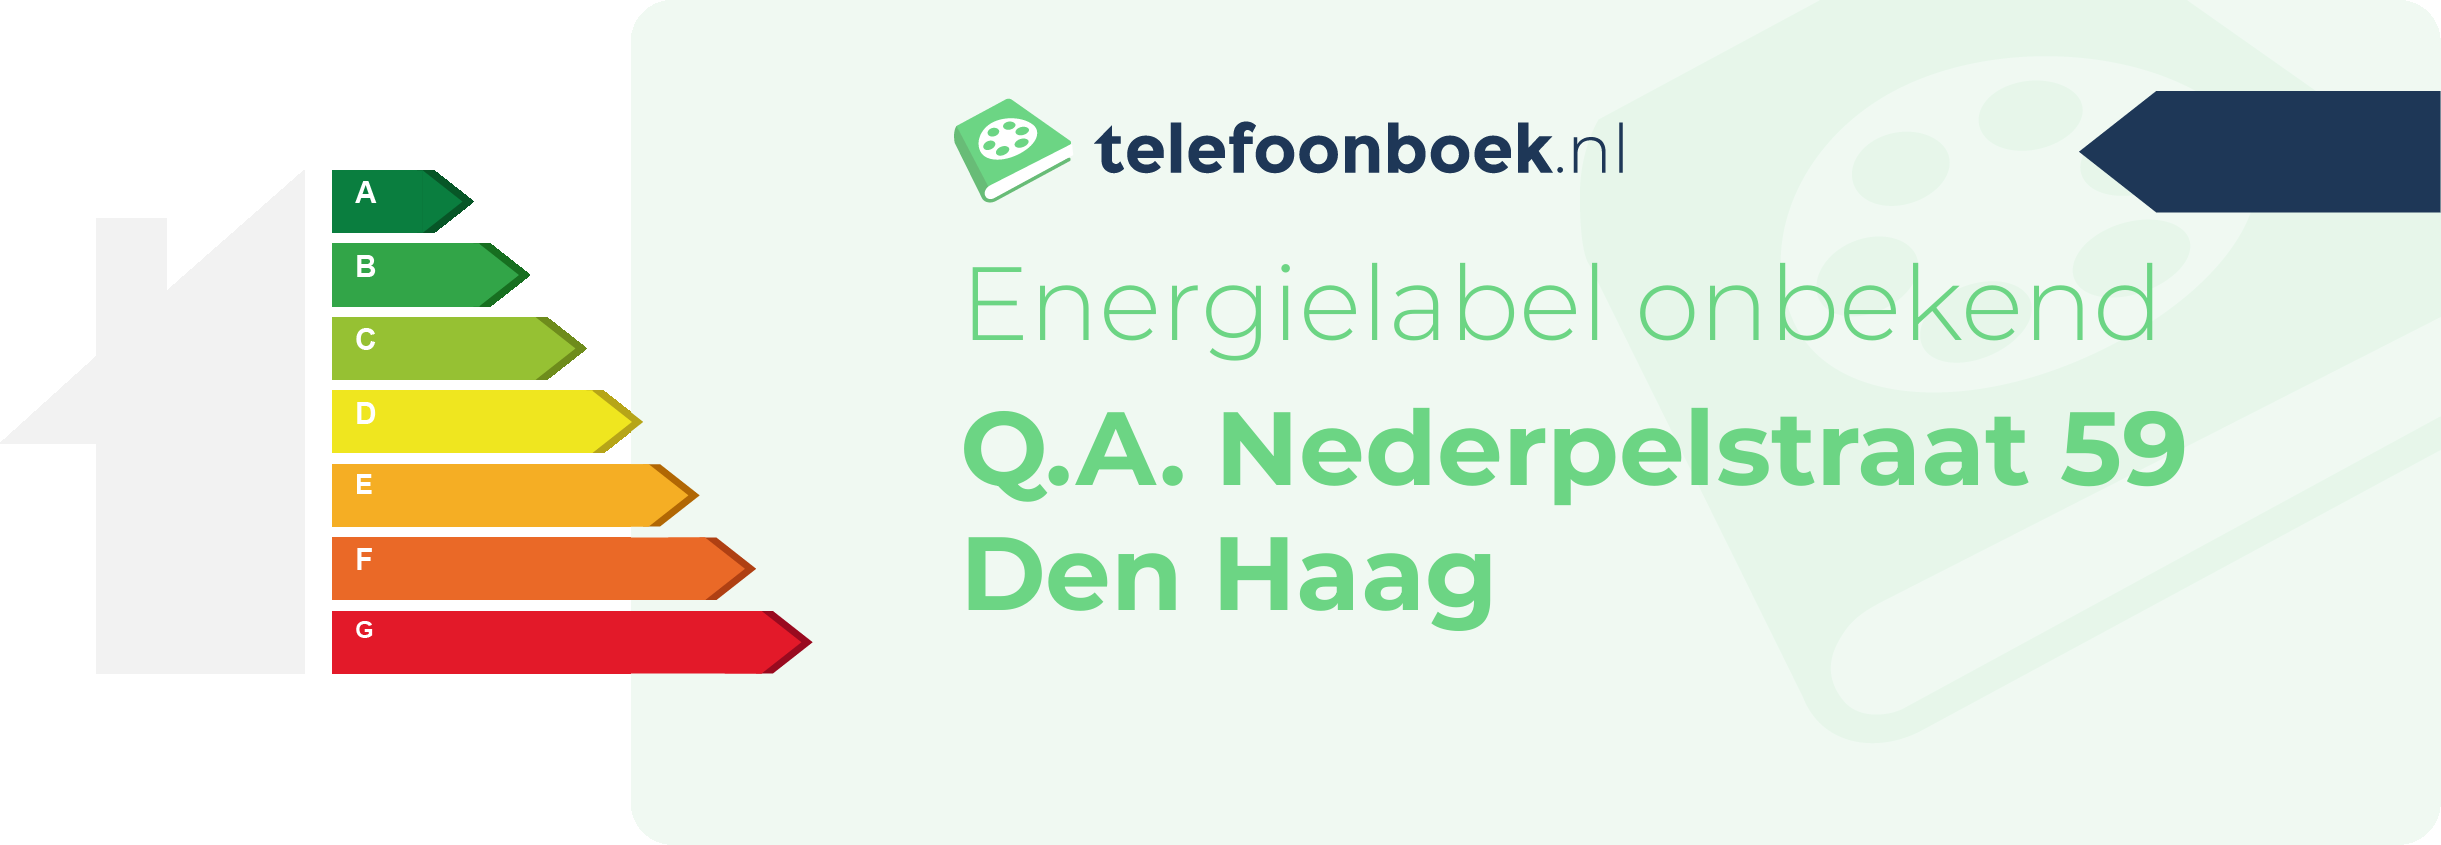 Energielabel Q.A. Nederpelstraat 59 Den Haag